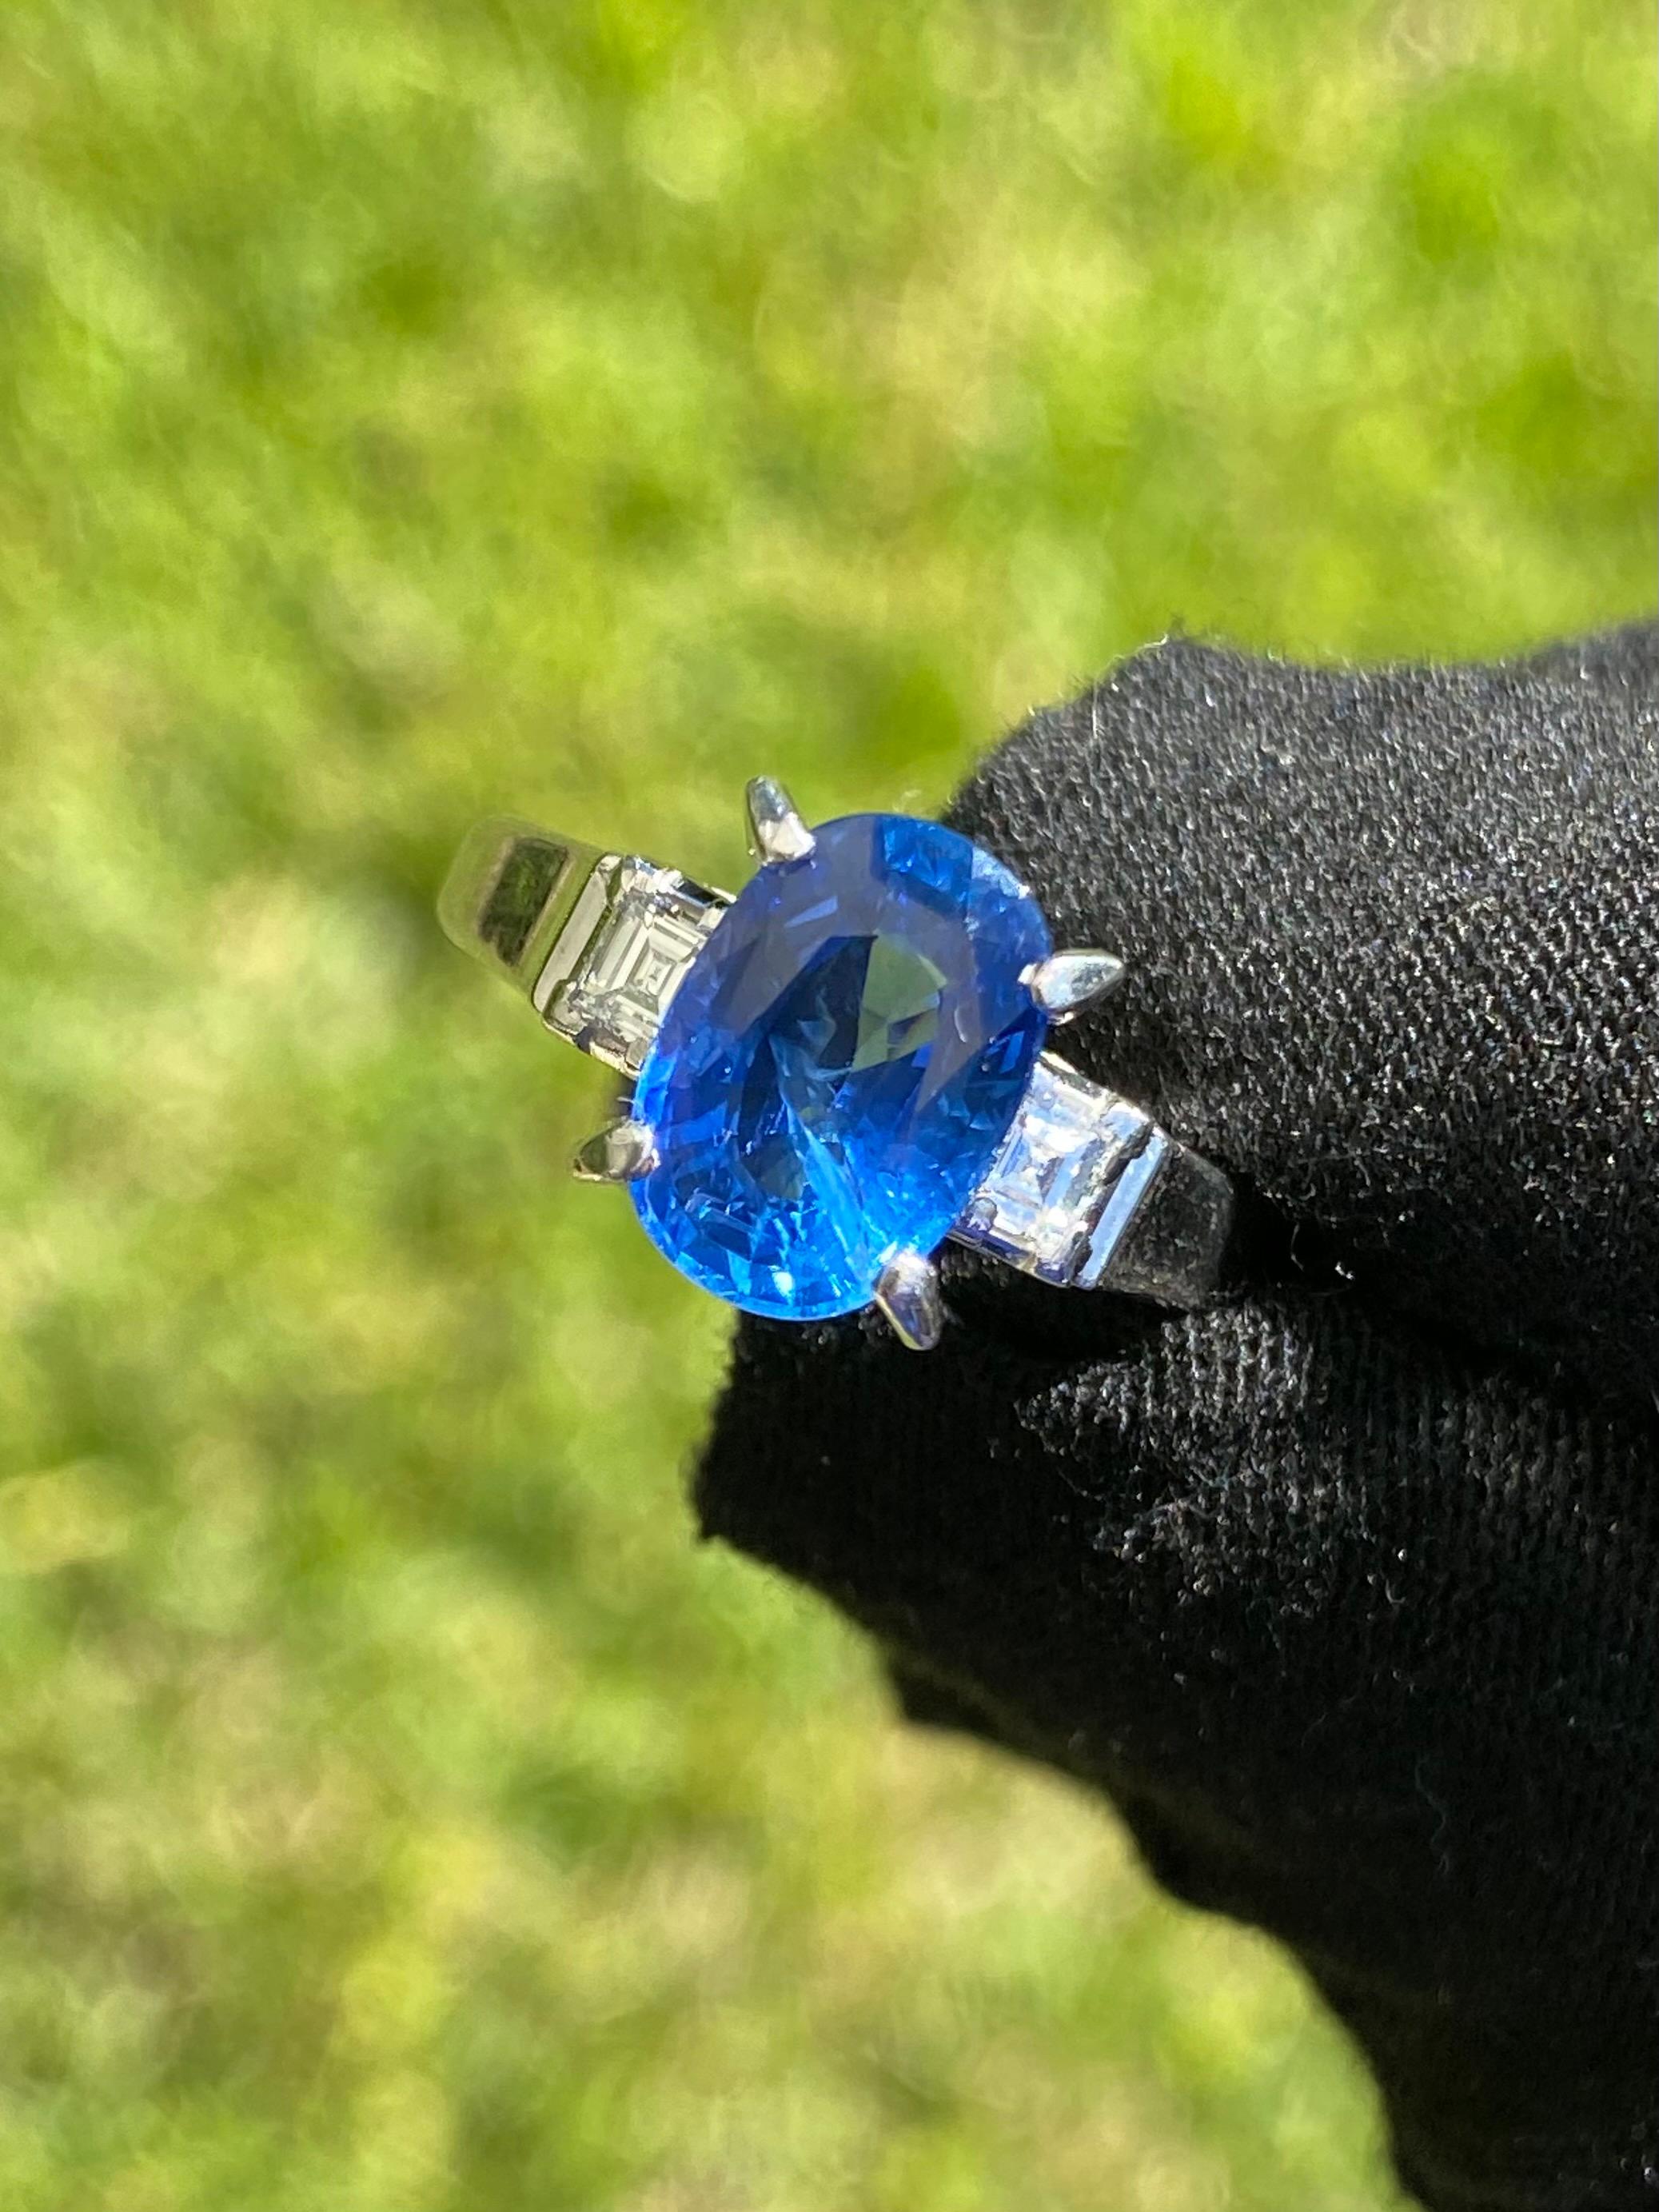 Vif saphir bleu naturel serti en platine et orné de 0,23 carats de diamants taille baguette. Cette bague vintage est une bague de fiançailles ou de déclaration idéale. 

Le saphir central est d'une couleur profonde magnifique et vibrante qui reflète